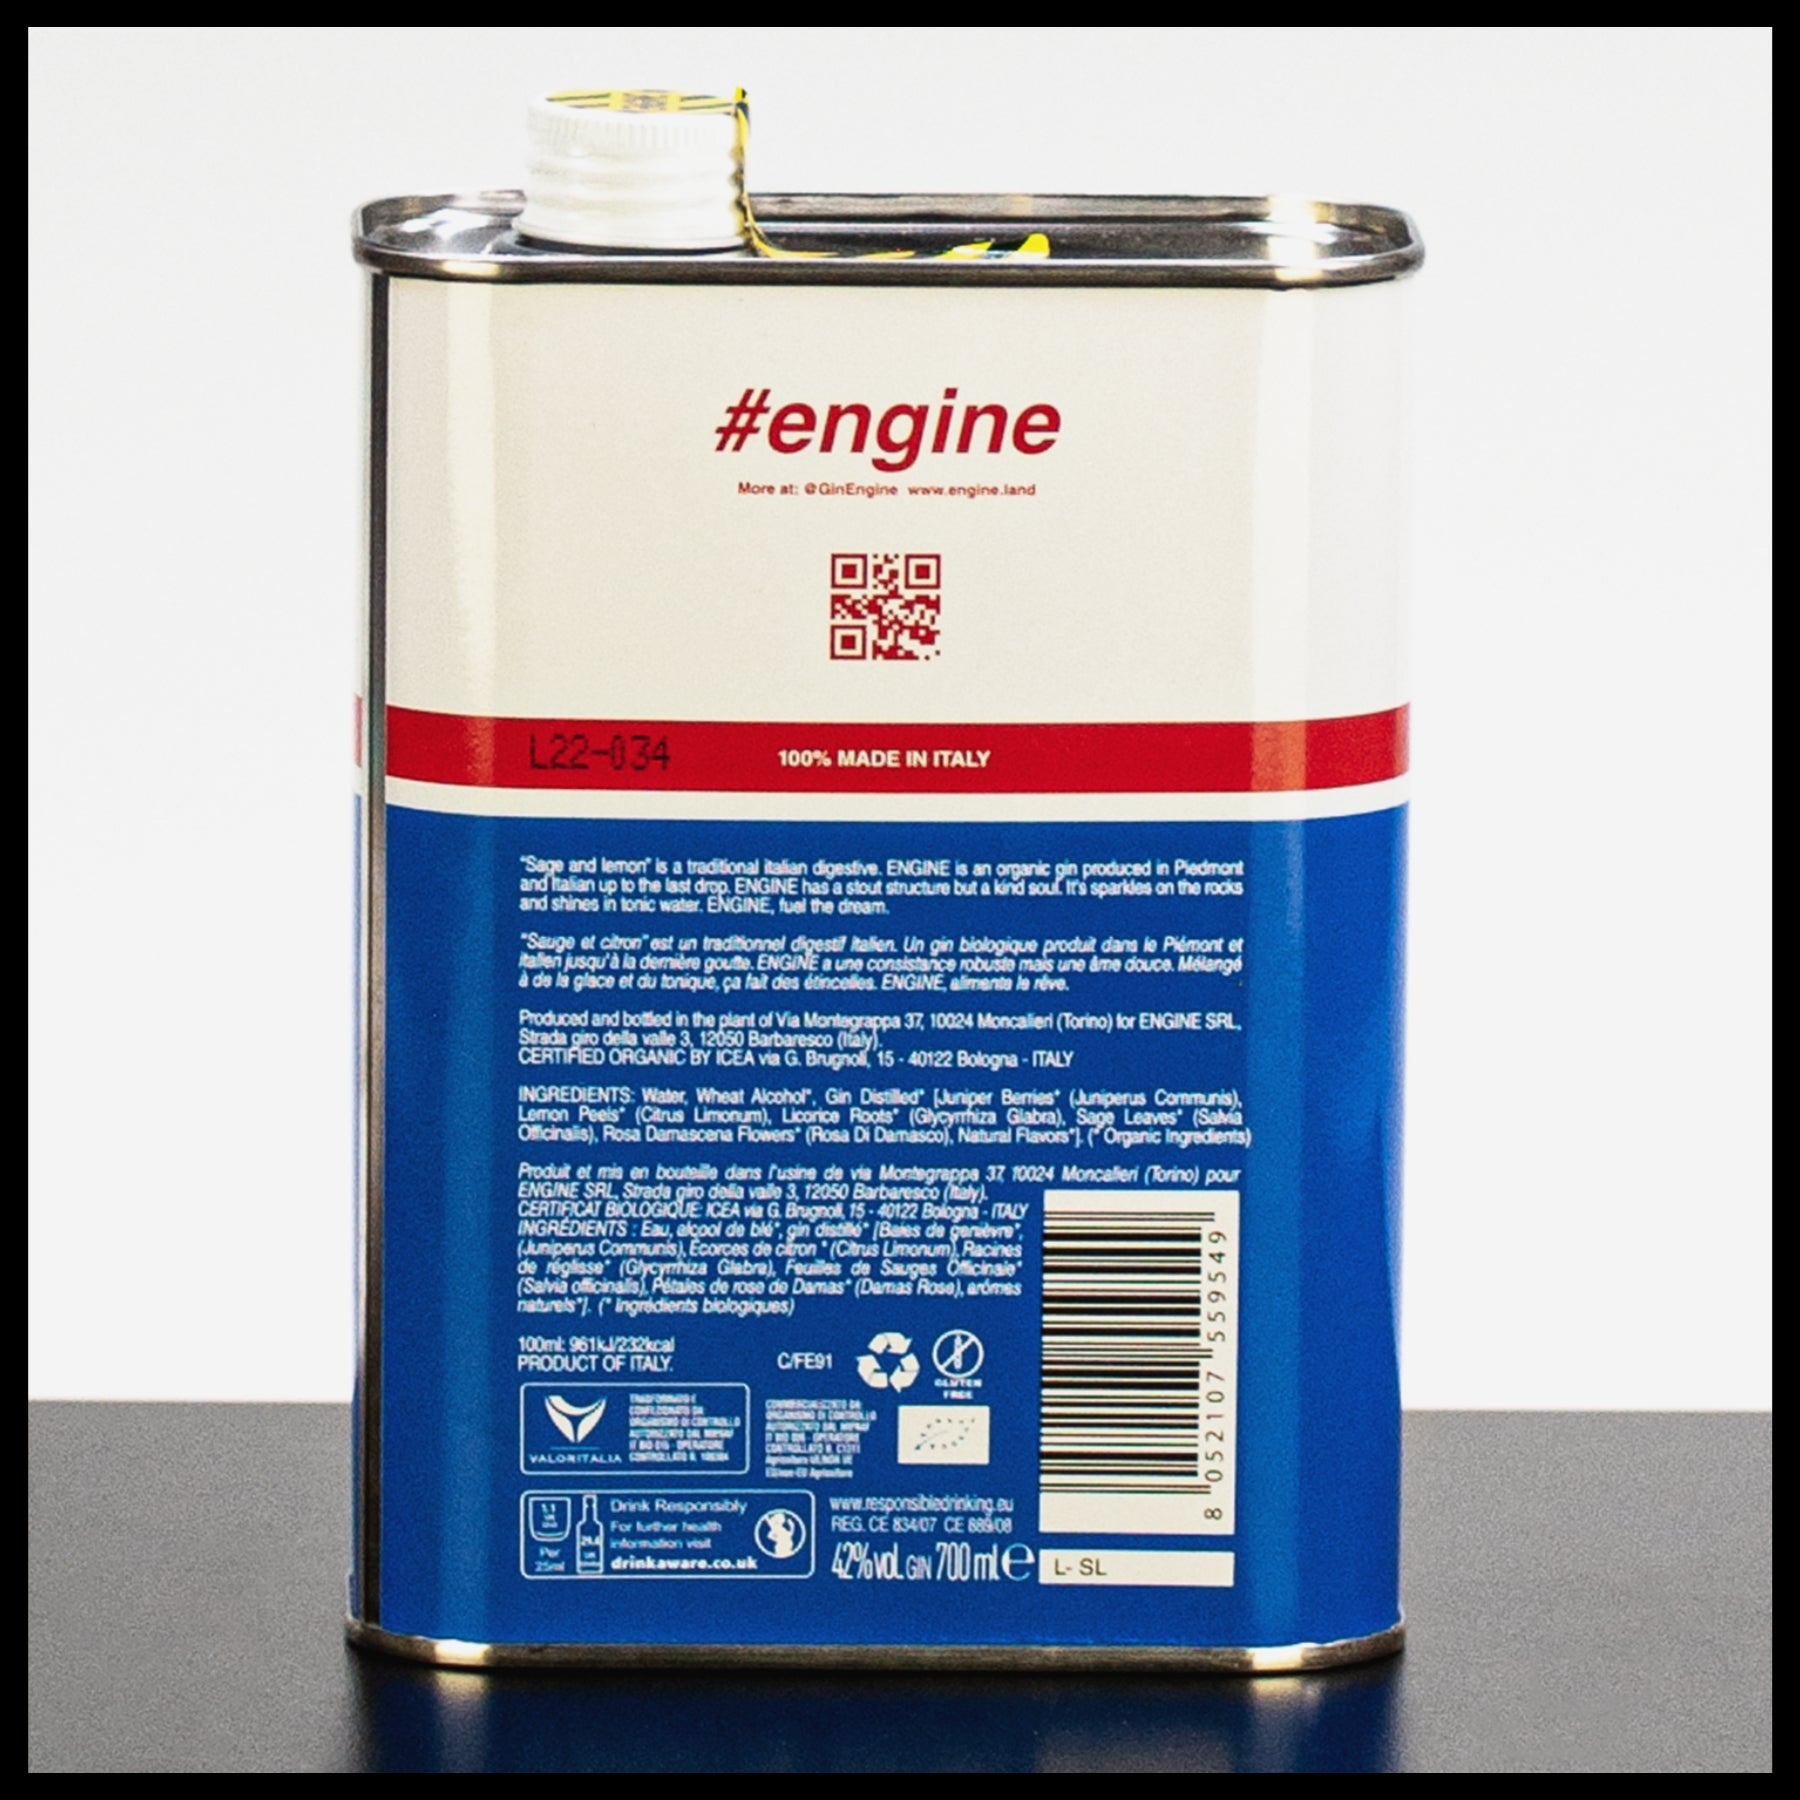 Engine Gin 0,7L - 42% Vol. - Trinklusiv